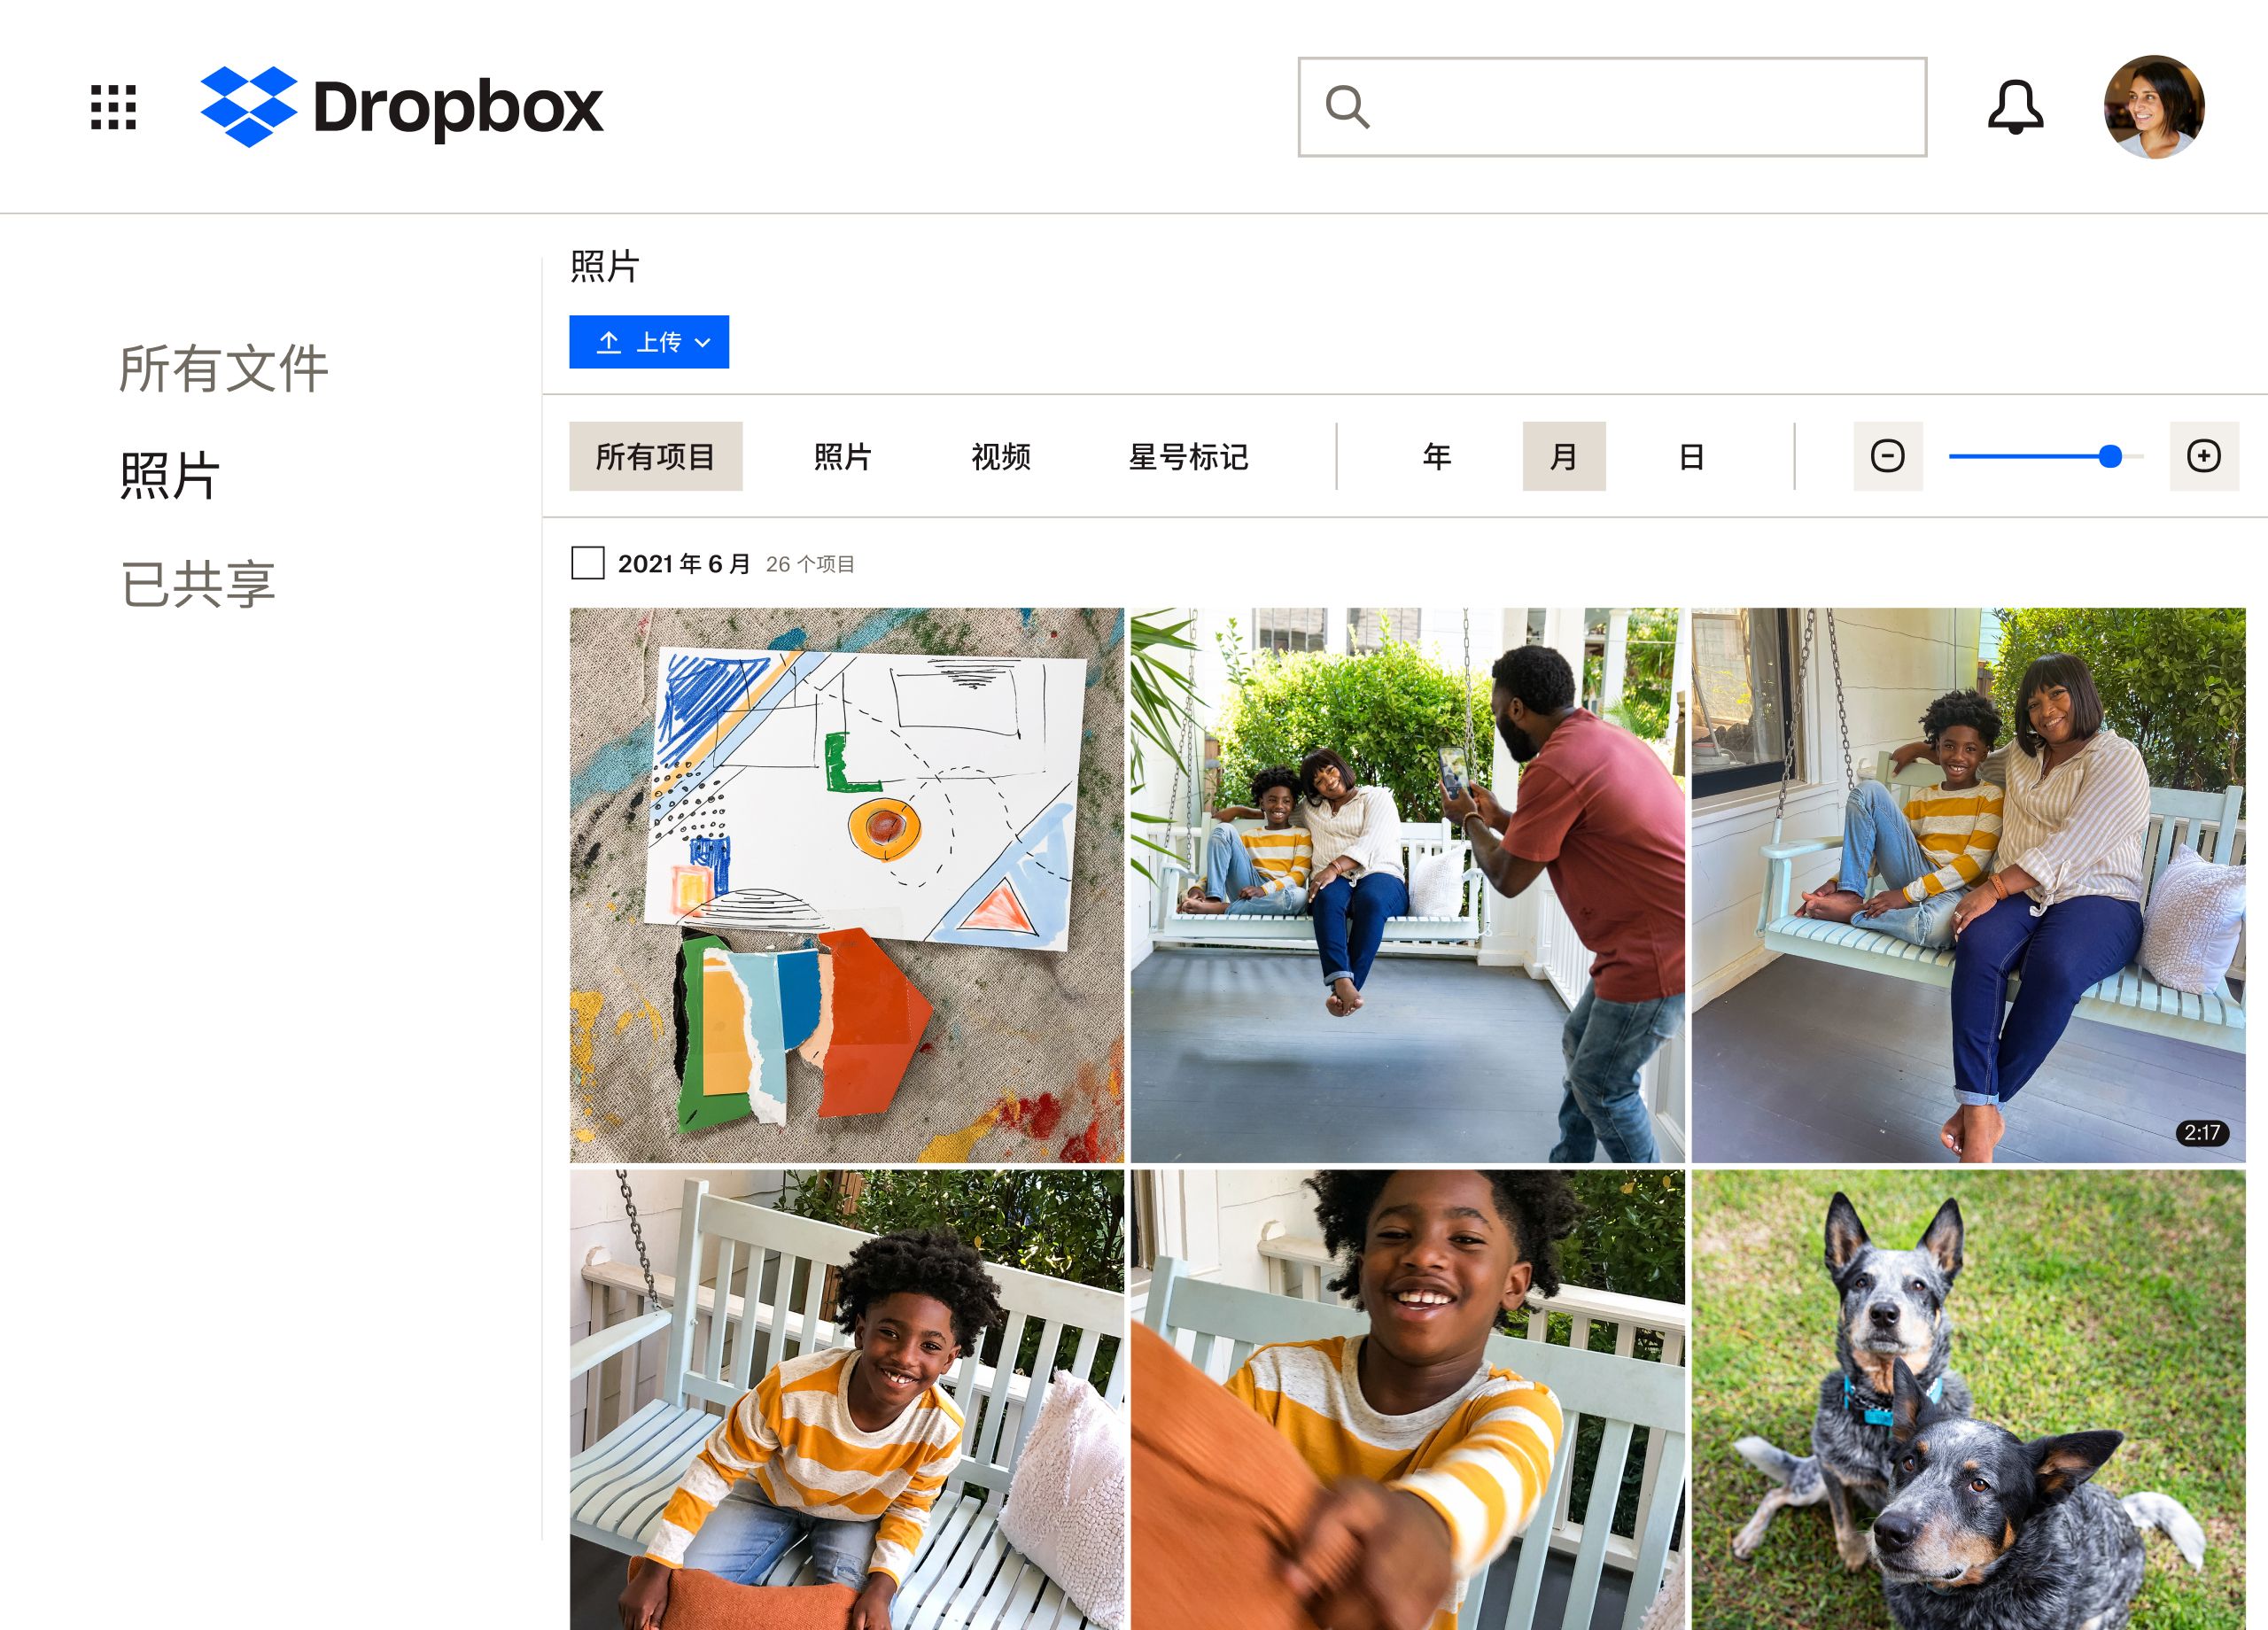 一家人和他们的狗的图片集，正在保存到 Dropbox 文件夹中